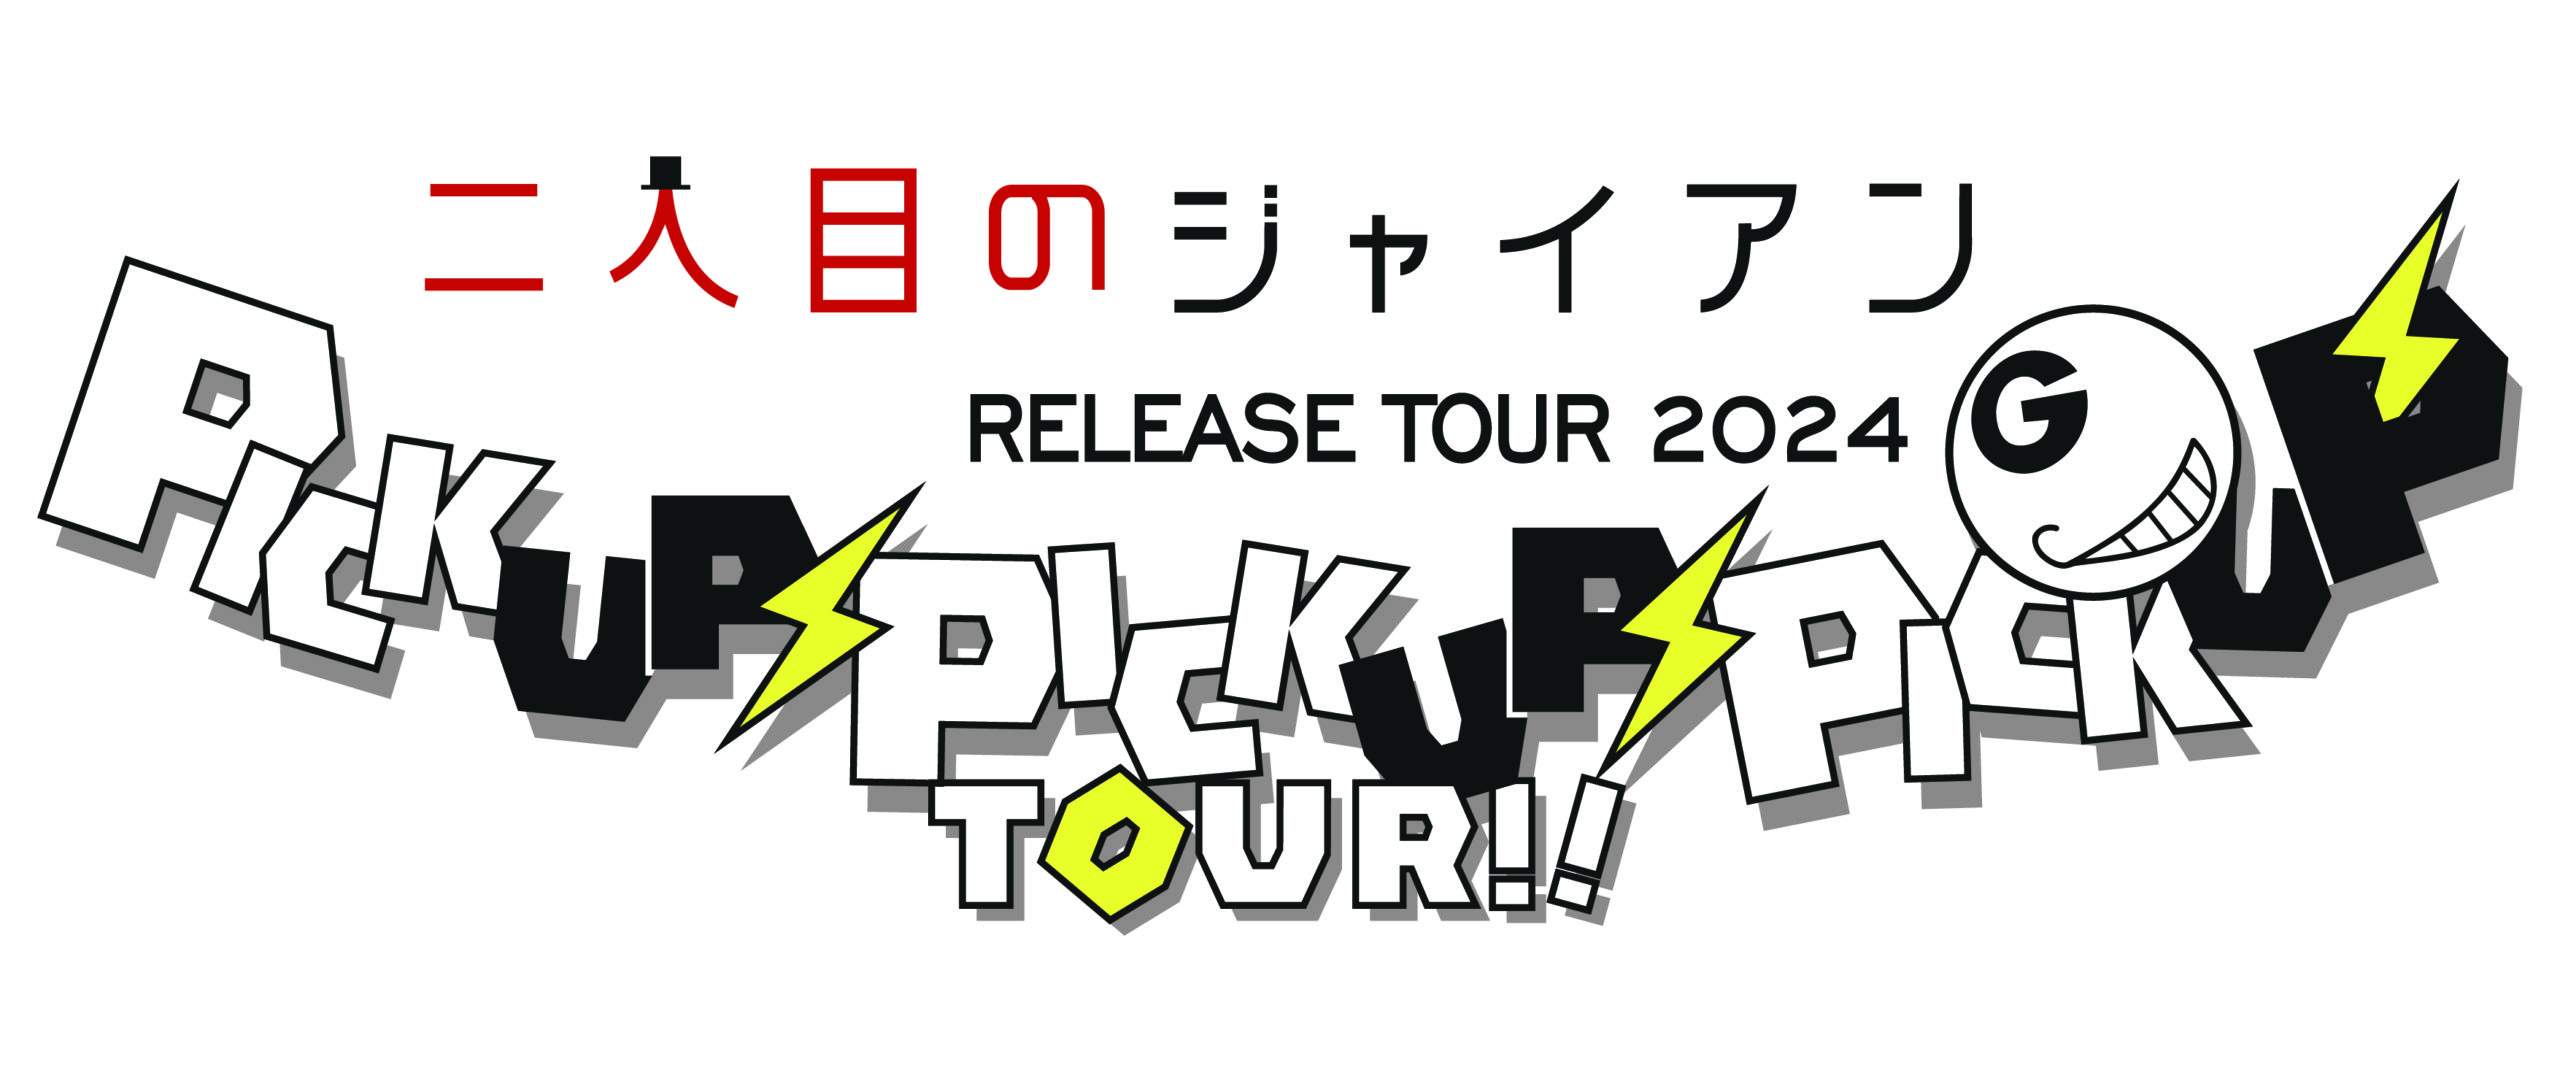 二人目のジャイアン 「ピカピカ」RELEASE TOUR 2024